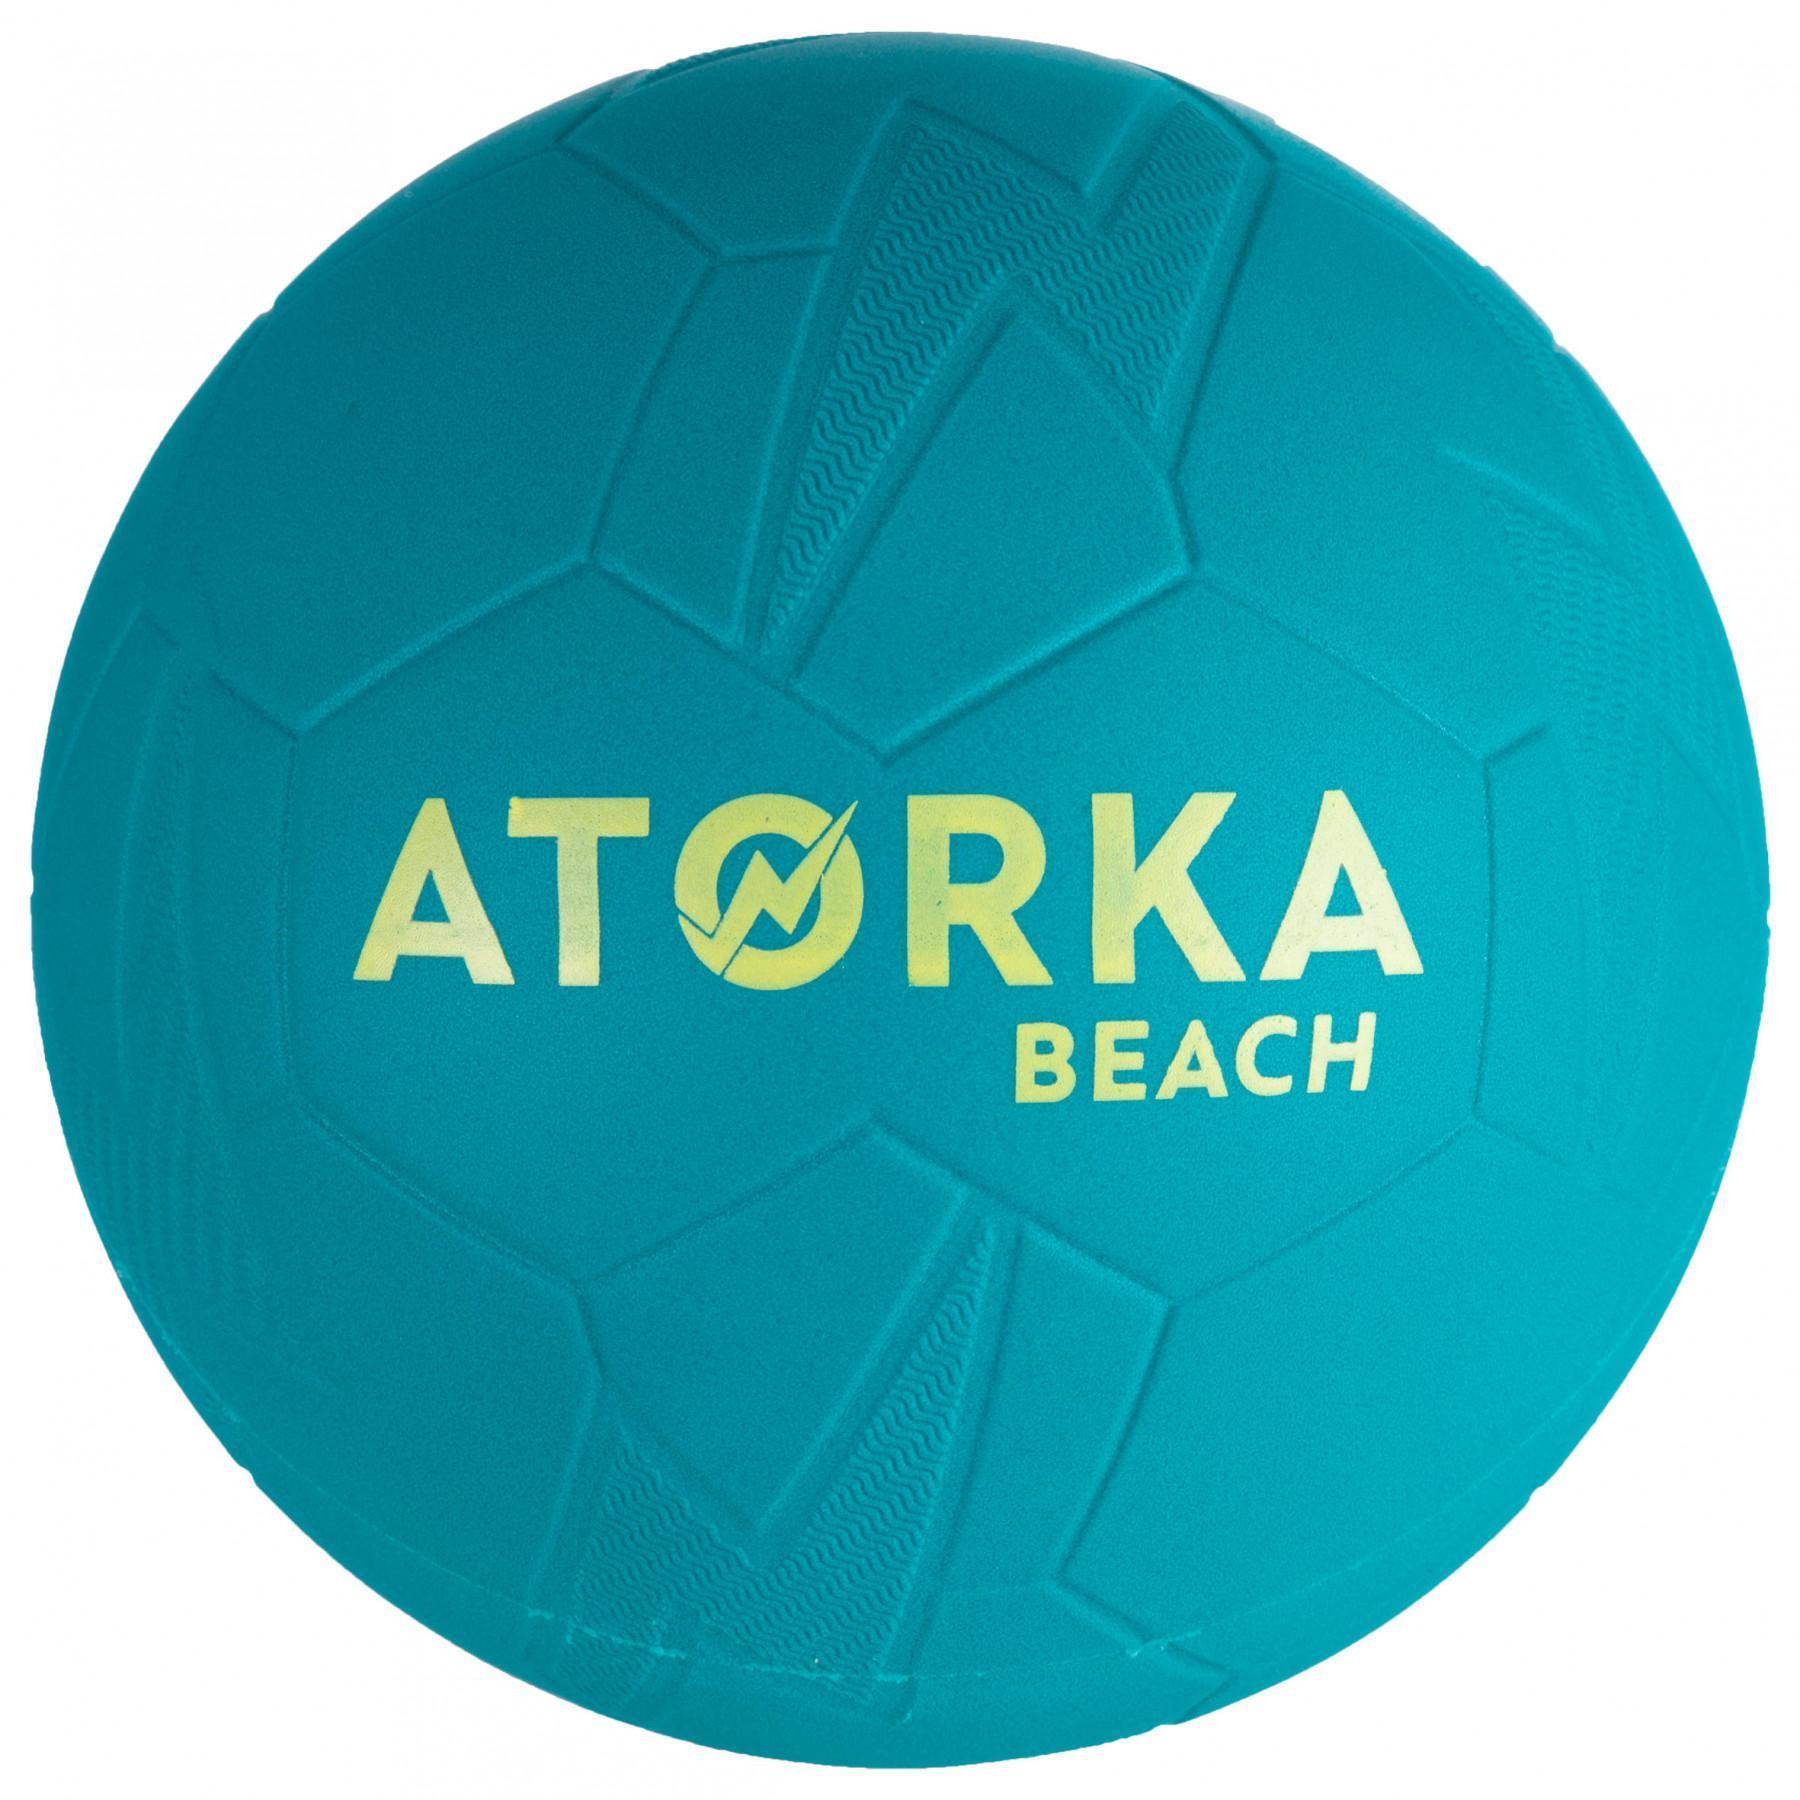 Balonmano playa Atorka HB500B - Taille 3